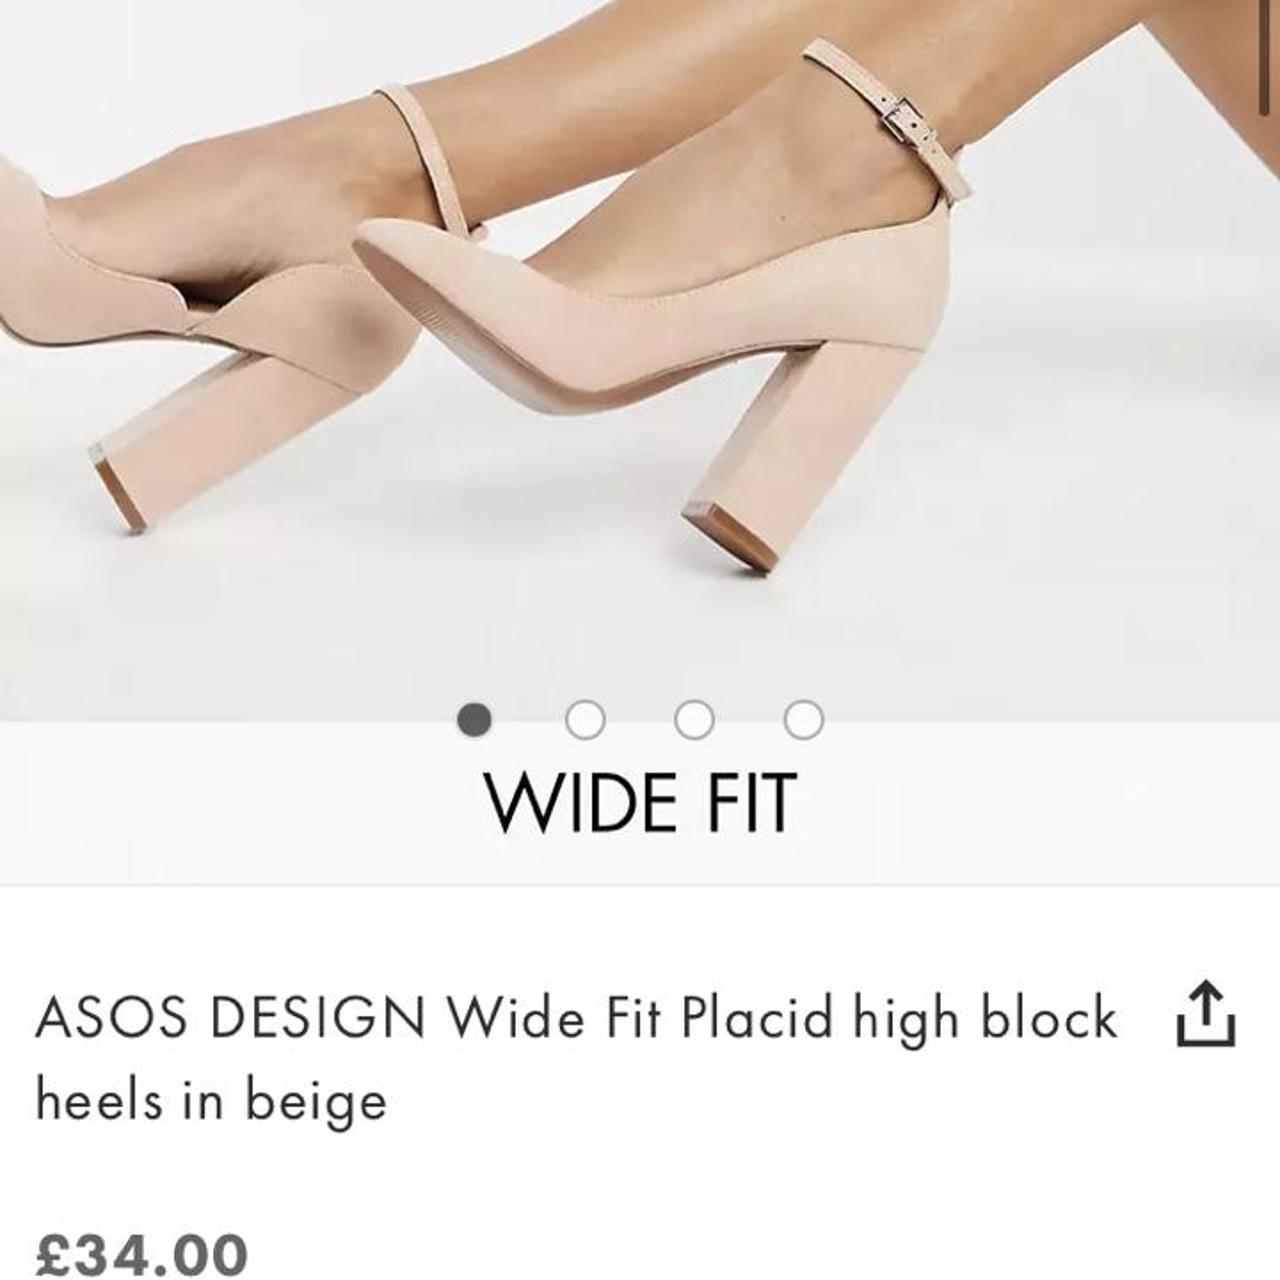 ASOS DESIGN Wide Fit Placid high block heels in beige